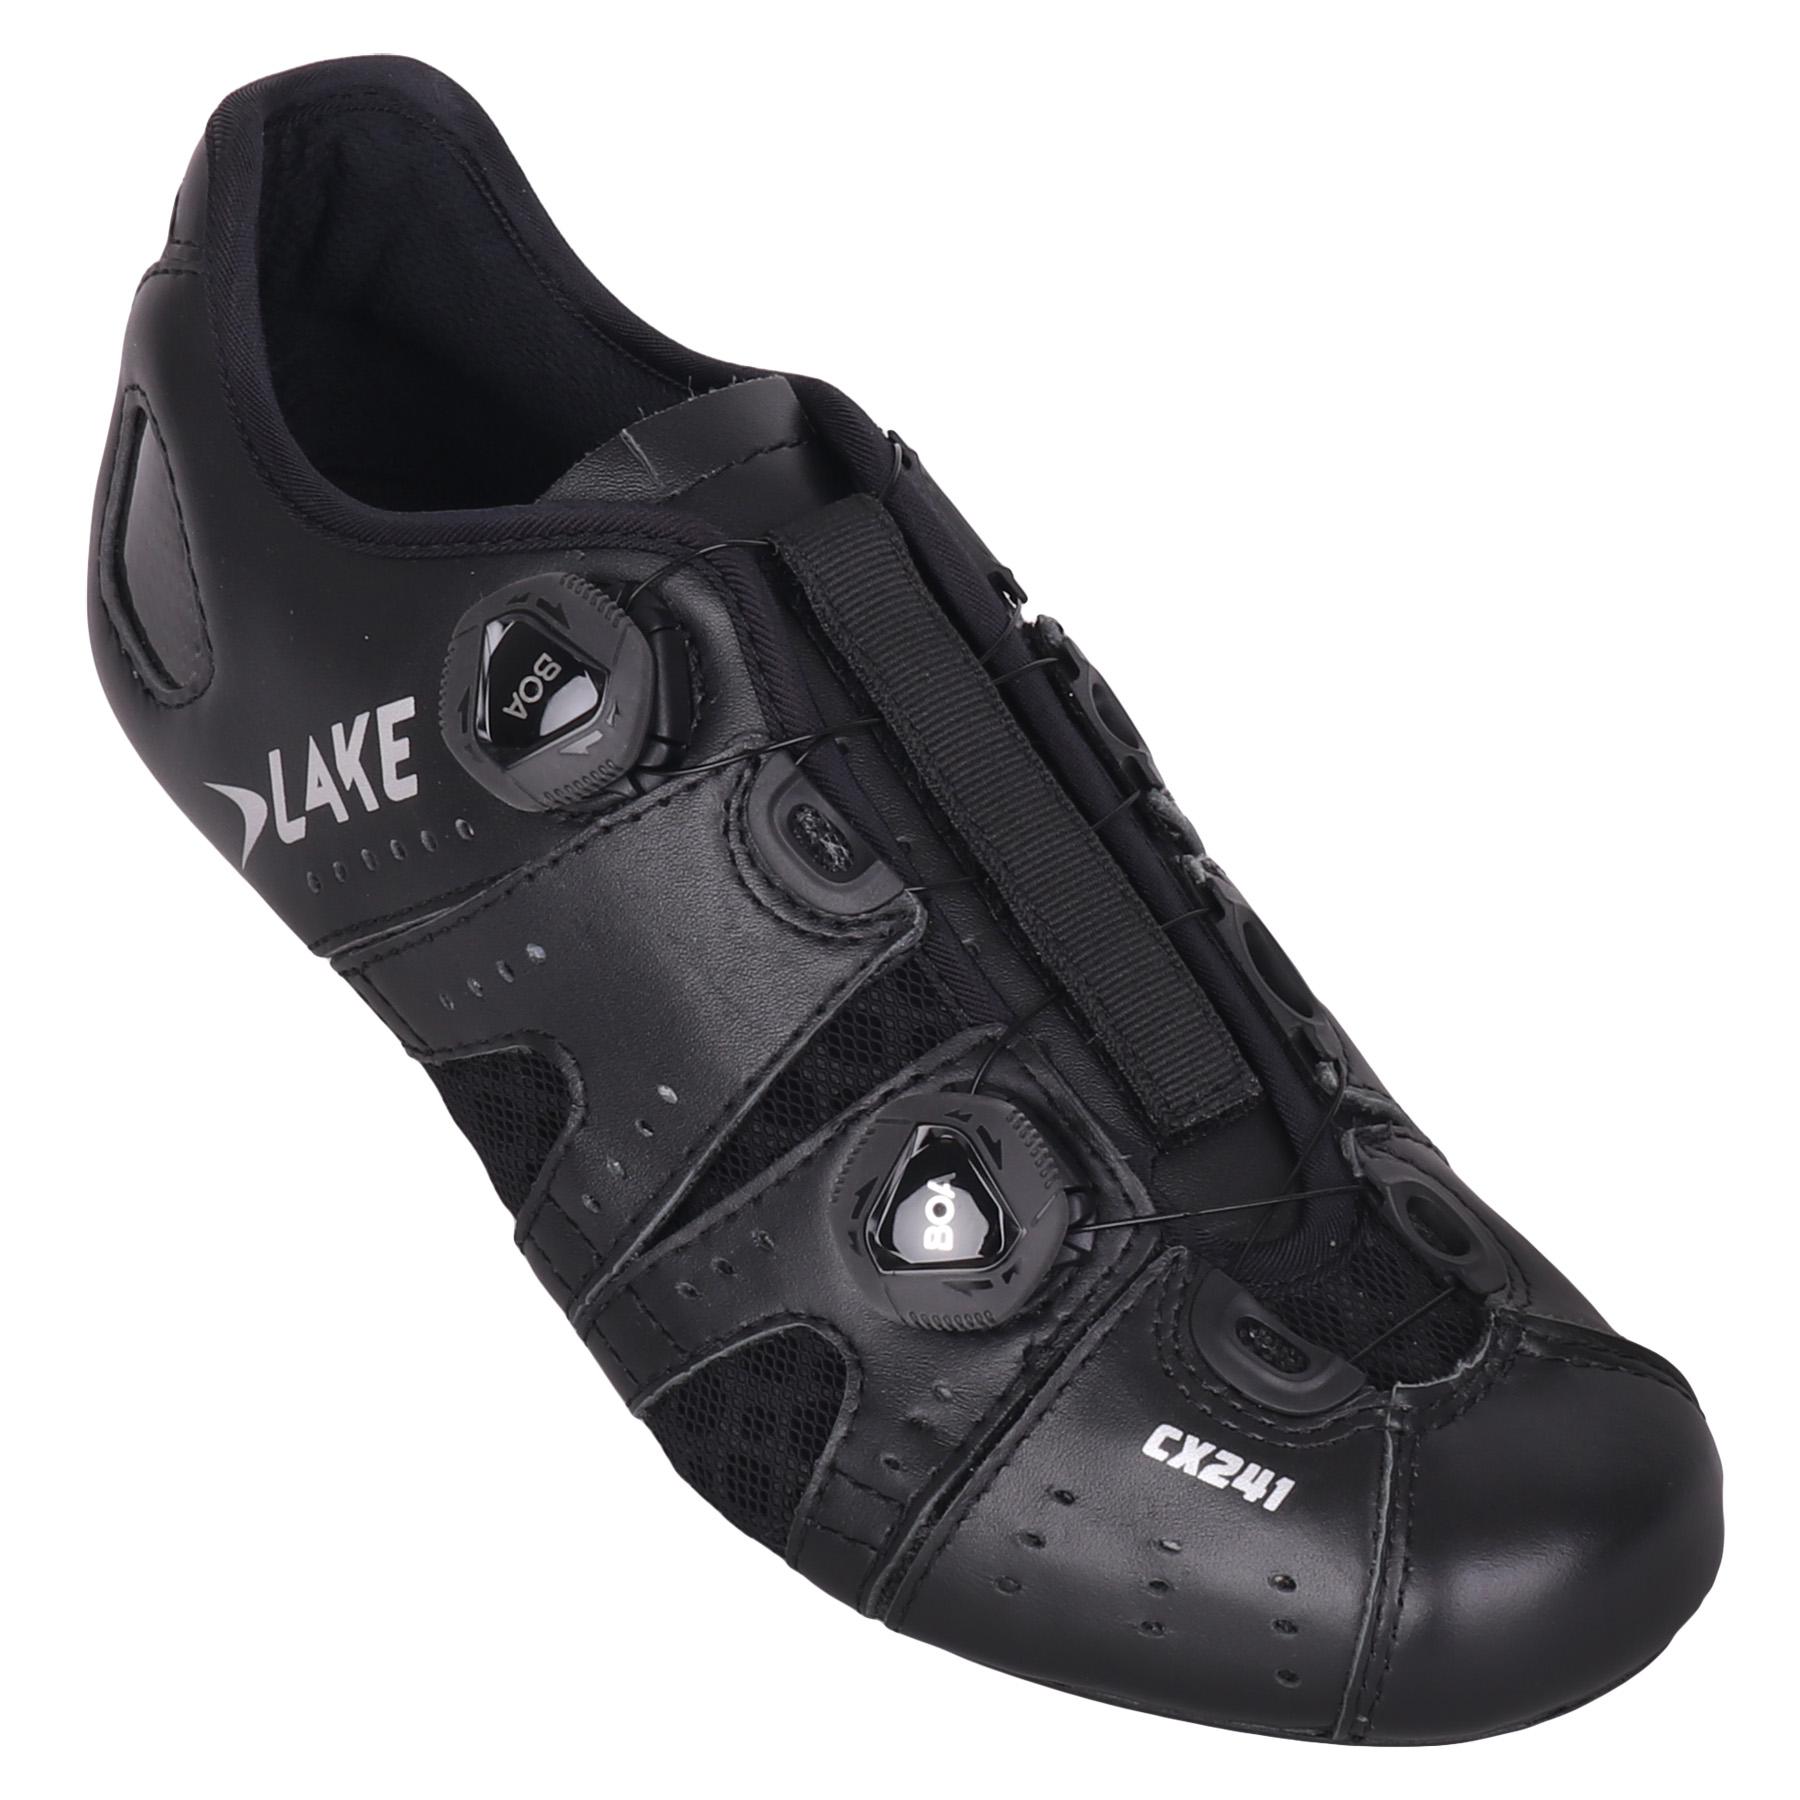 Productfoto van Lake CX241 Racefietsschoenen - zwart/zilver